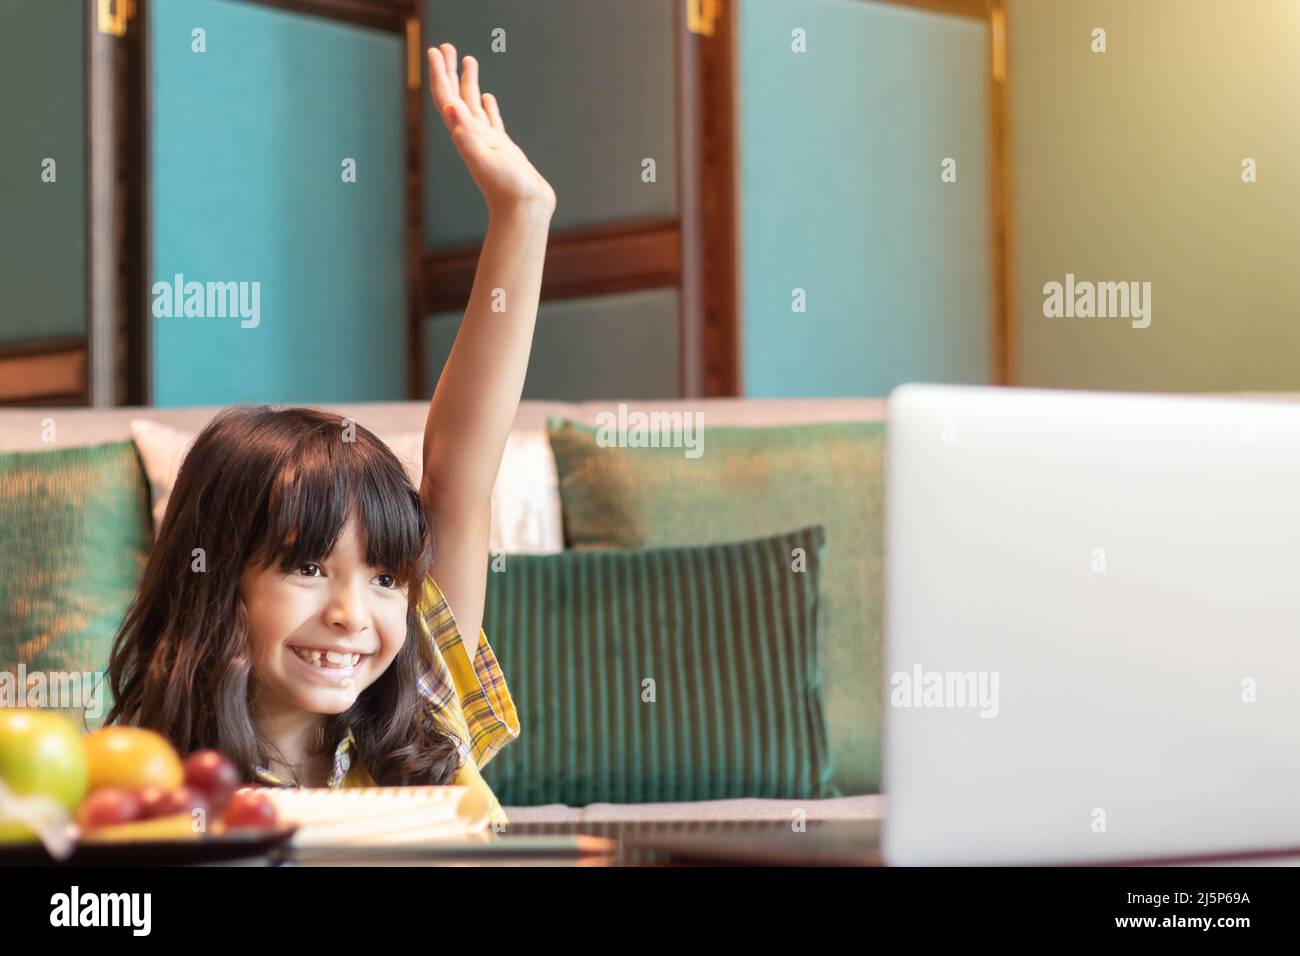 estudiante que estudia en línea levántate la mano para responder a las preguntas de la maestra en la clase en línea. concepto de interactivo en vivo, comunicación y respuesta del aprendizaje Foto de stock